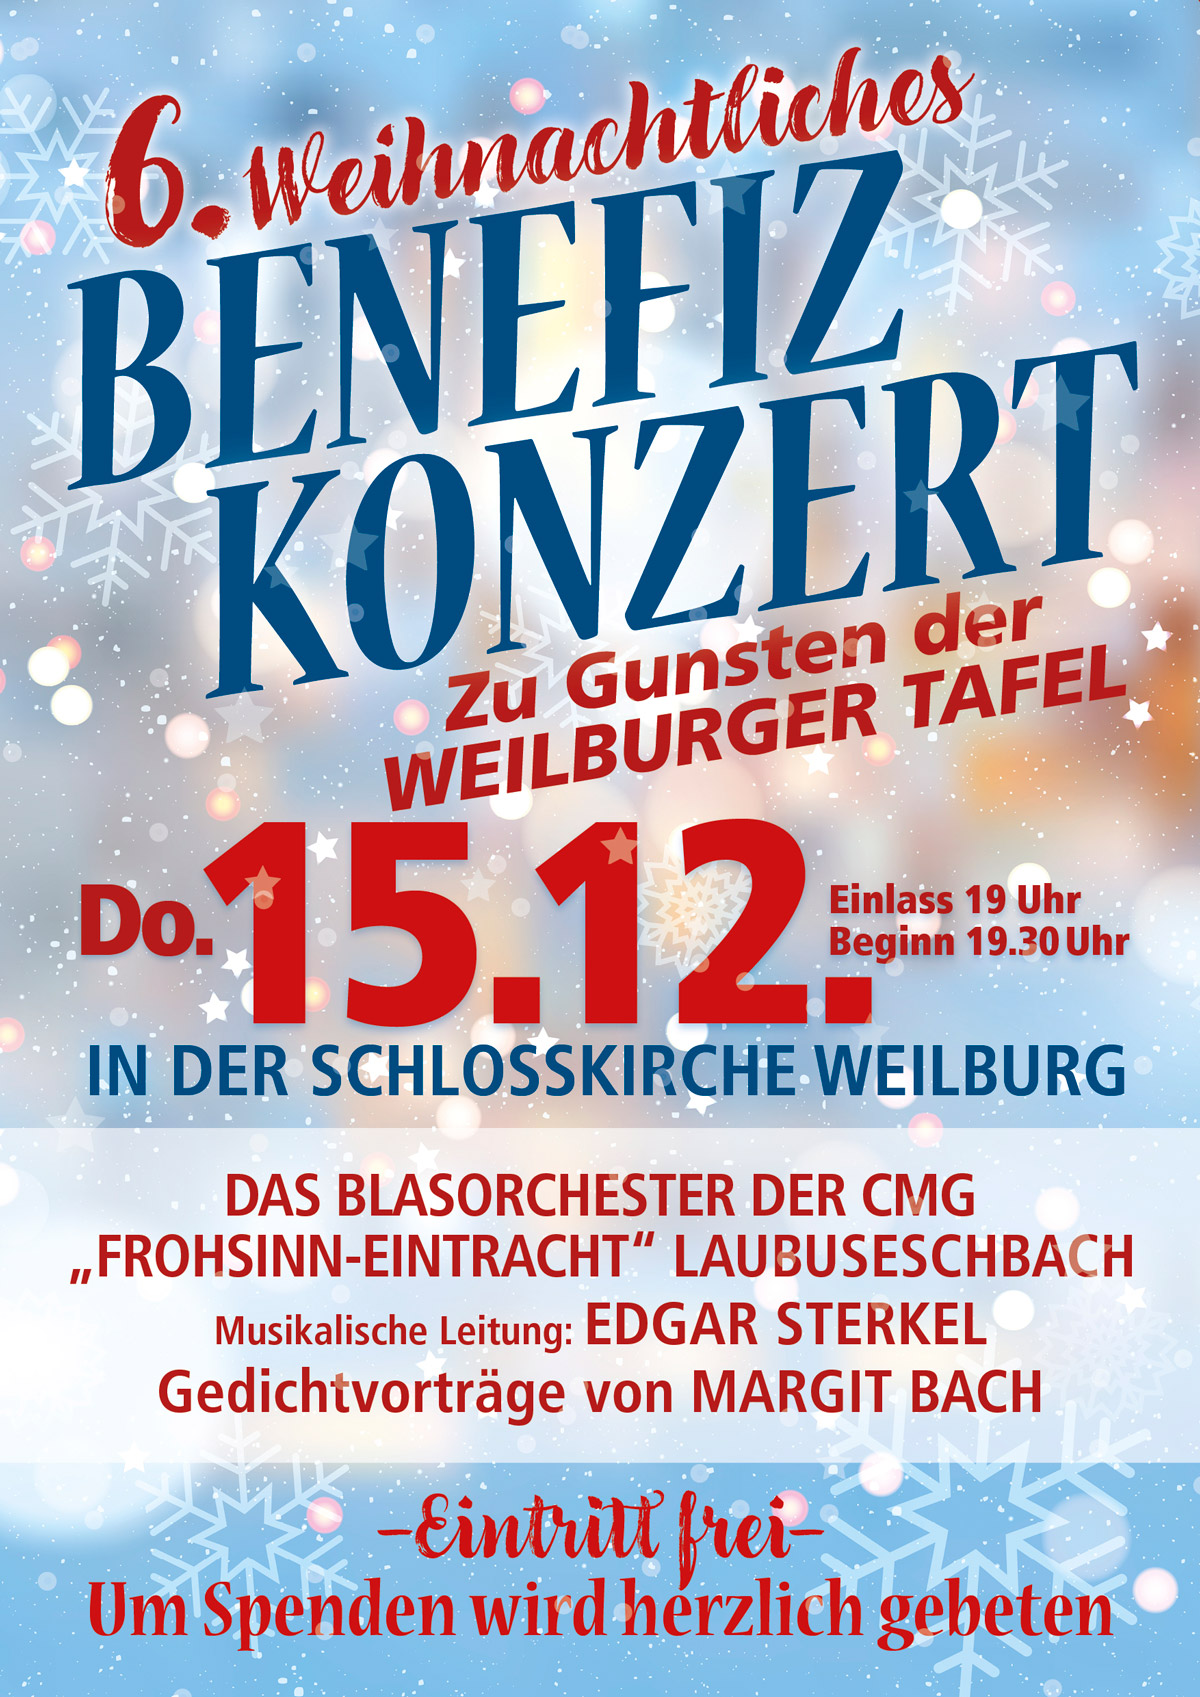 CMG Laubuseschbach Benefizkonzert Weilburger Schlosskirche am 15. Dezember 2022